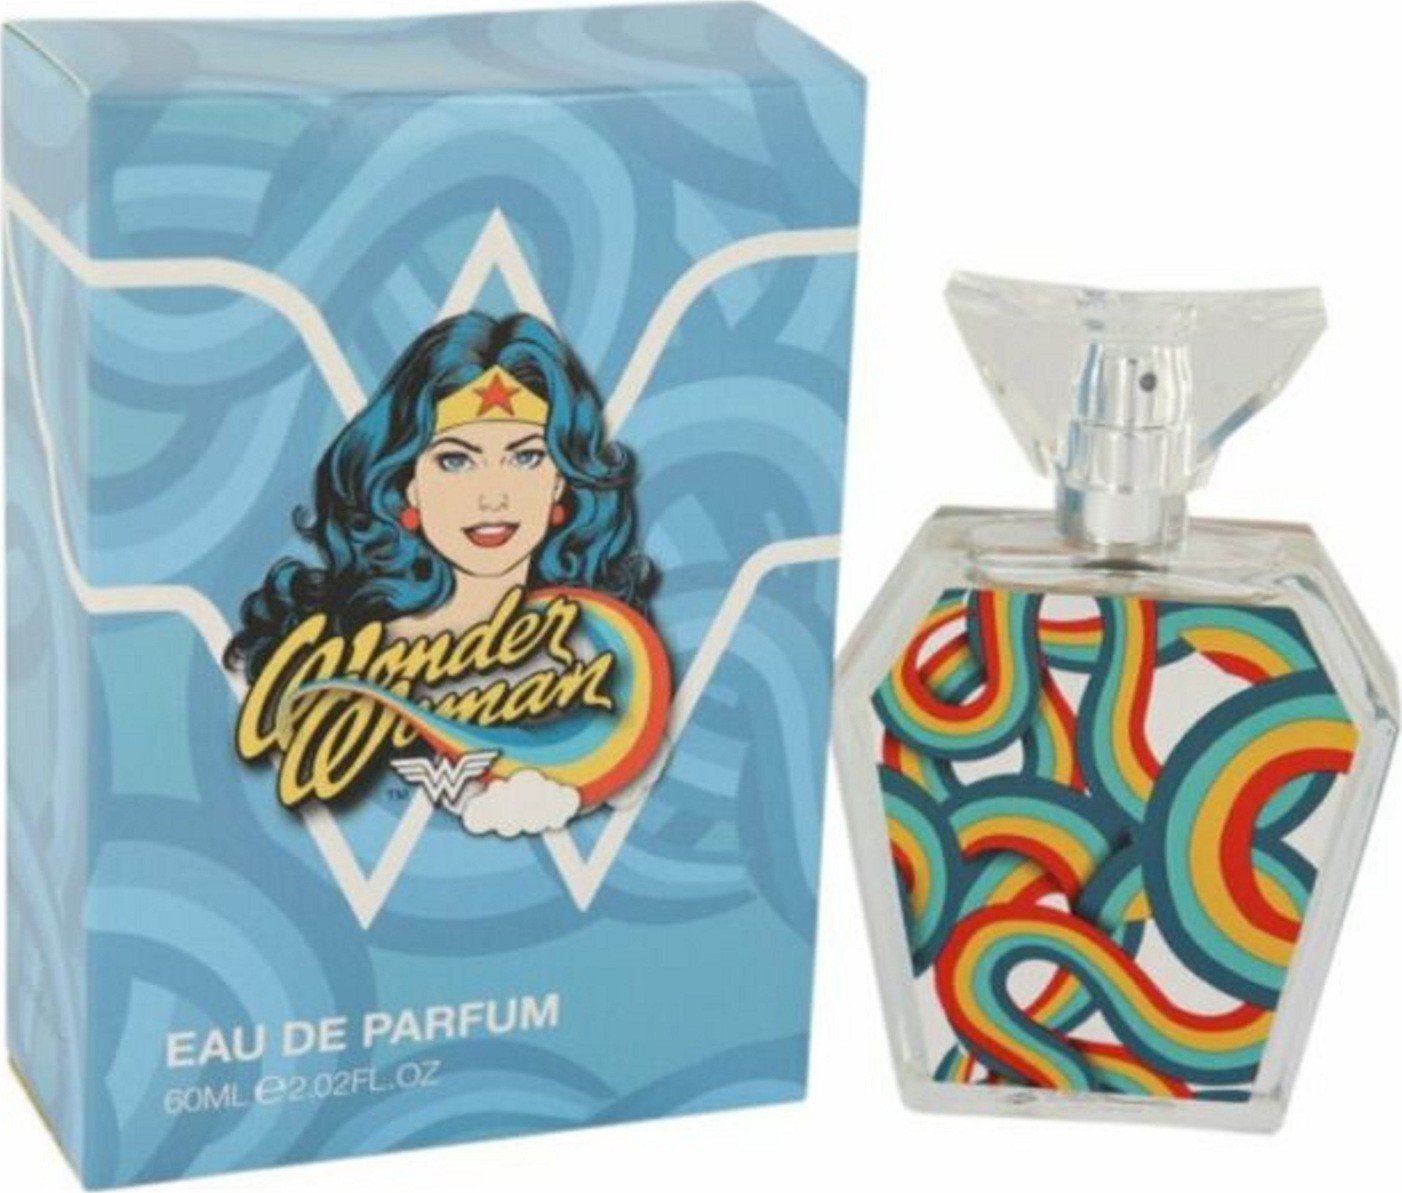 Image of Wonder Woman - Eau de parfum 60 ml